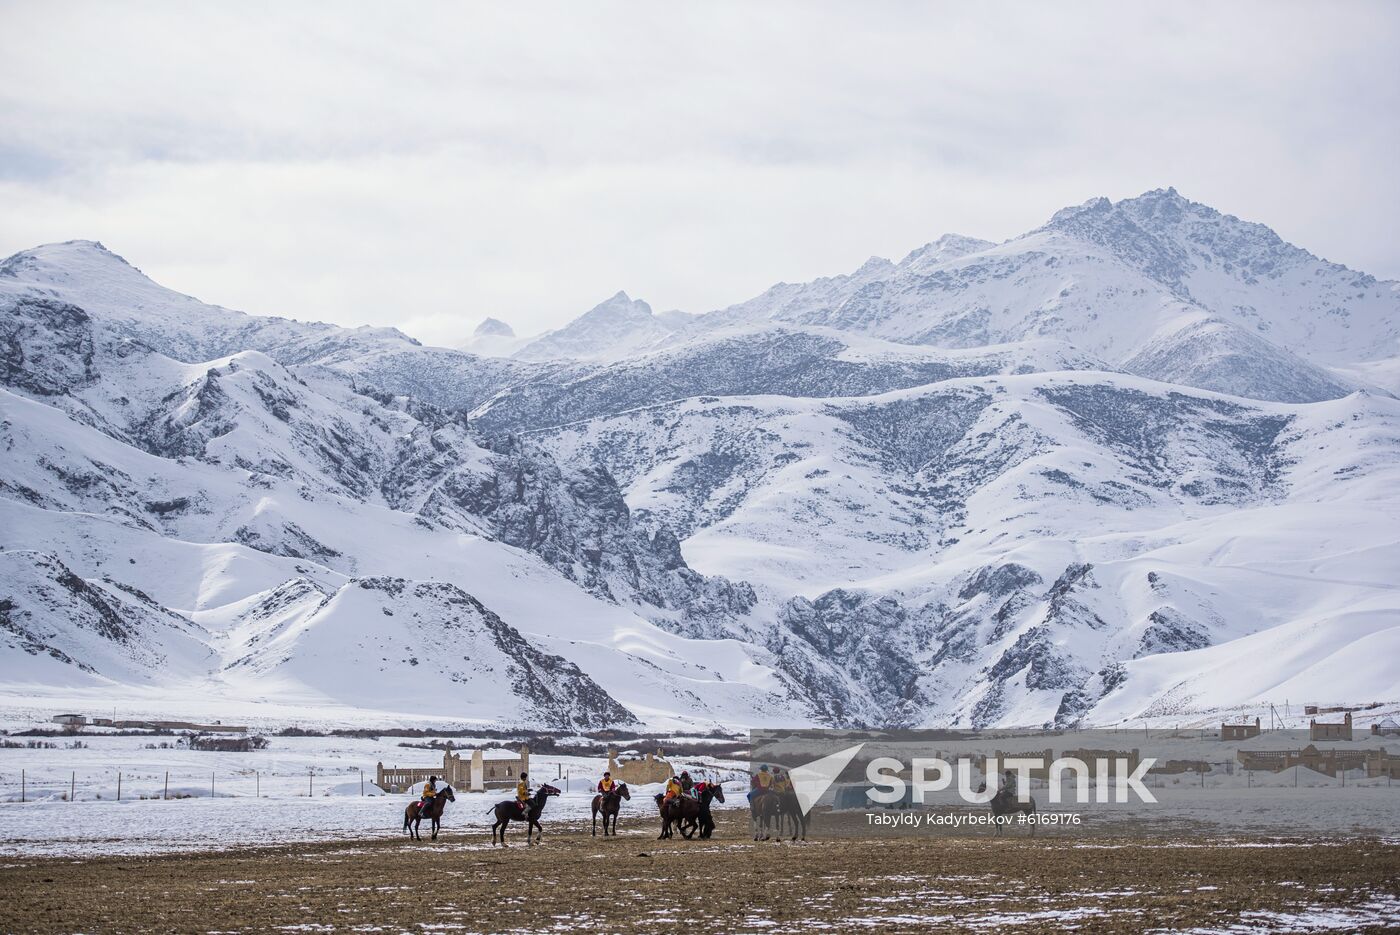 Kyrgyzstan Traditional Horse Game